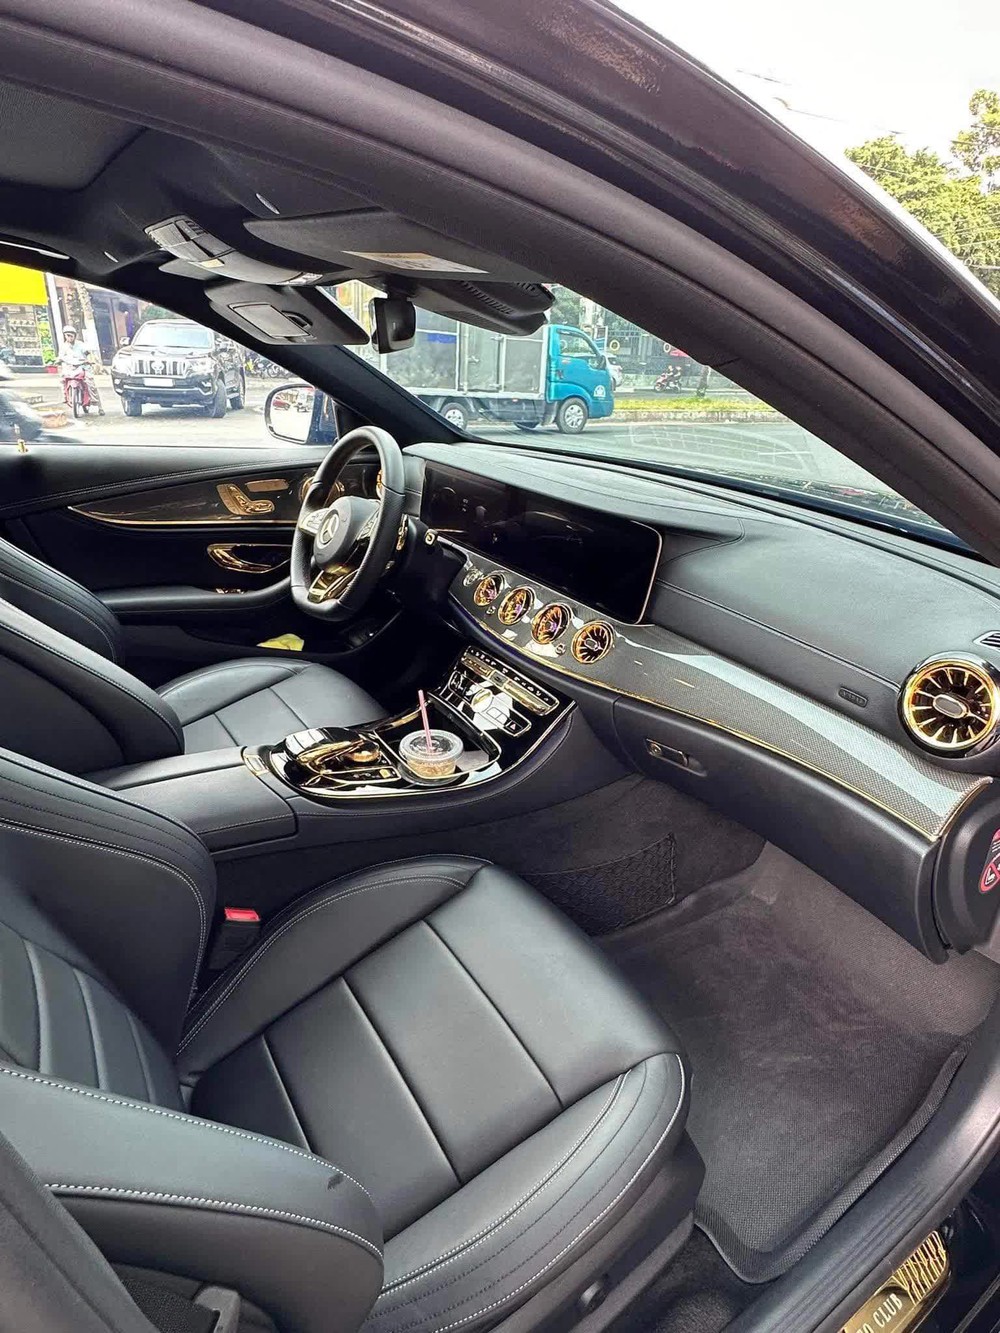 Mercedes E 300 mạ vàng, dát kim cương hết 400 triệu, người bán rao lại đắt hơn giá thị trường cả tỷ đồng - Ảnh 6.